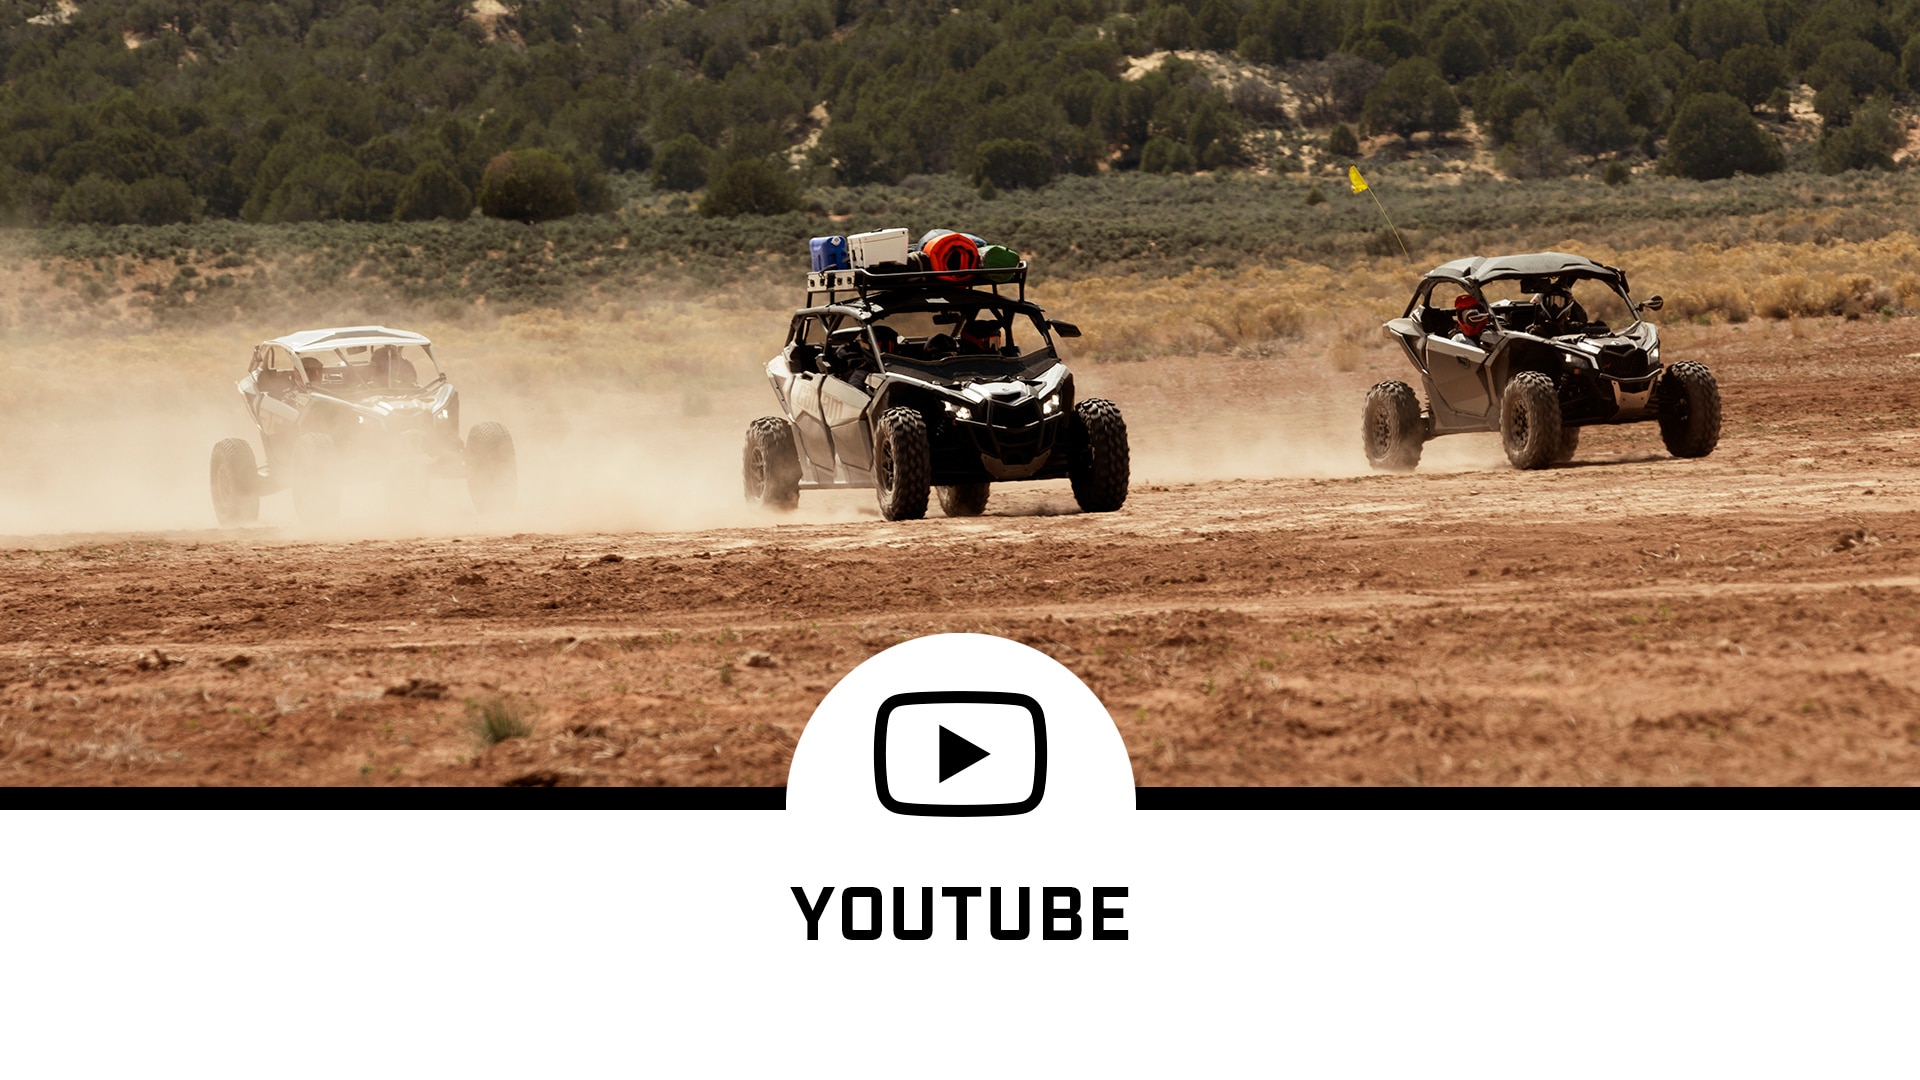 Tri vozidlá Can-Am na prašnej ceste a YouTube logo